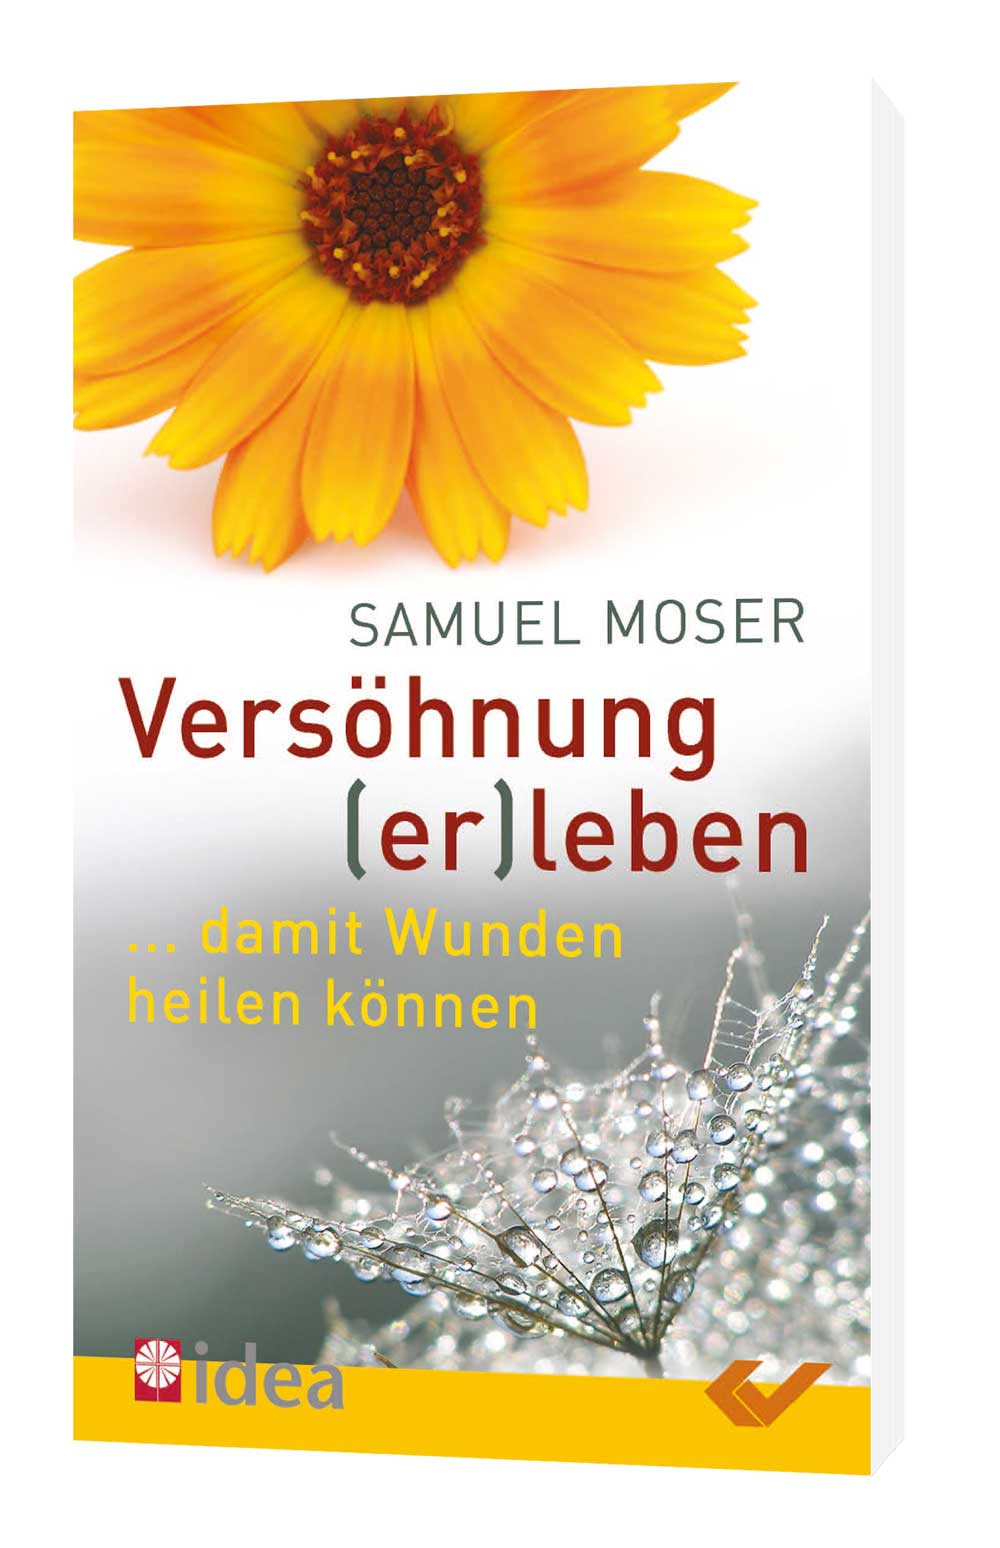 Samuel Moser: Versöhnung (er)leben - ... damit Wunden heilen können